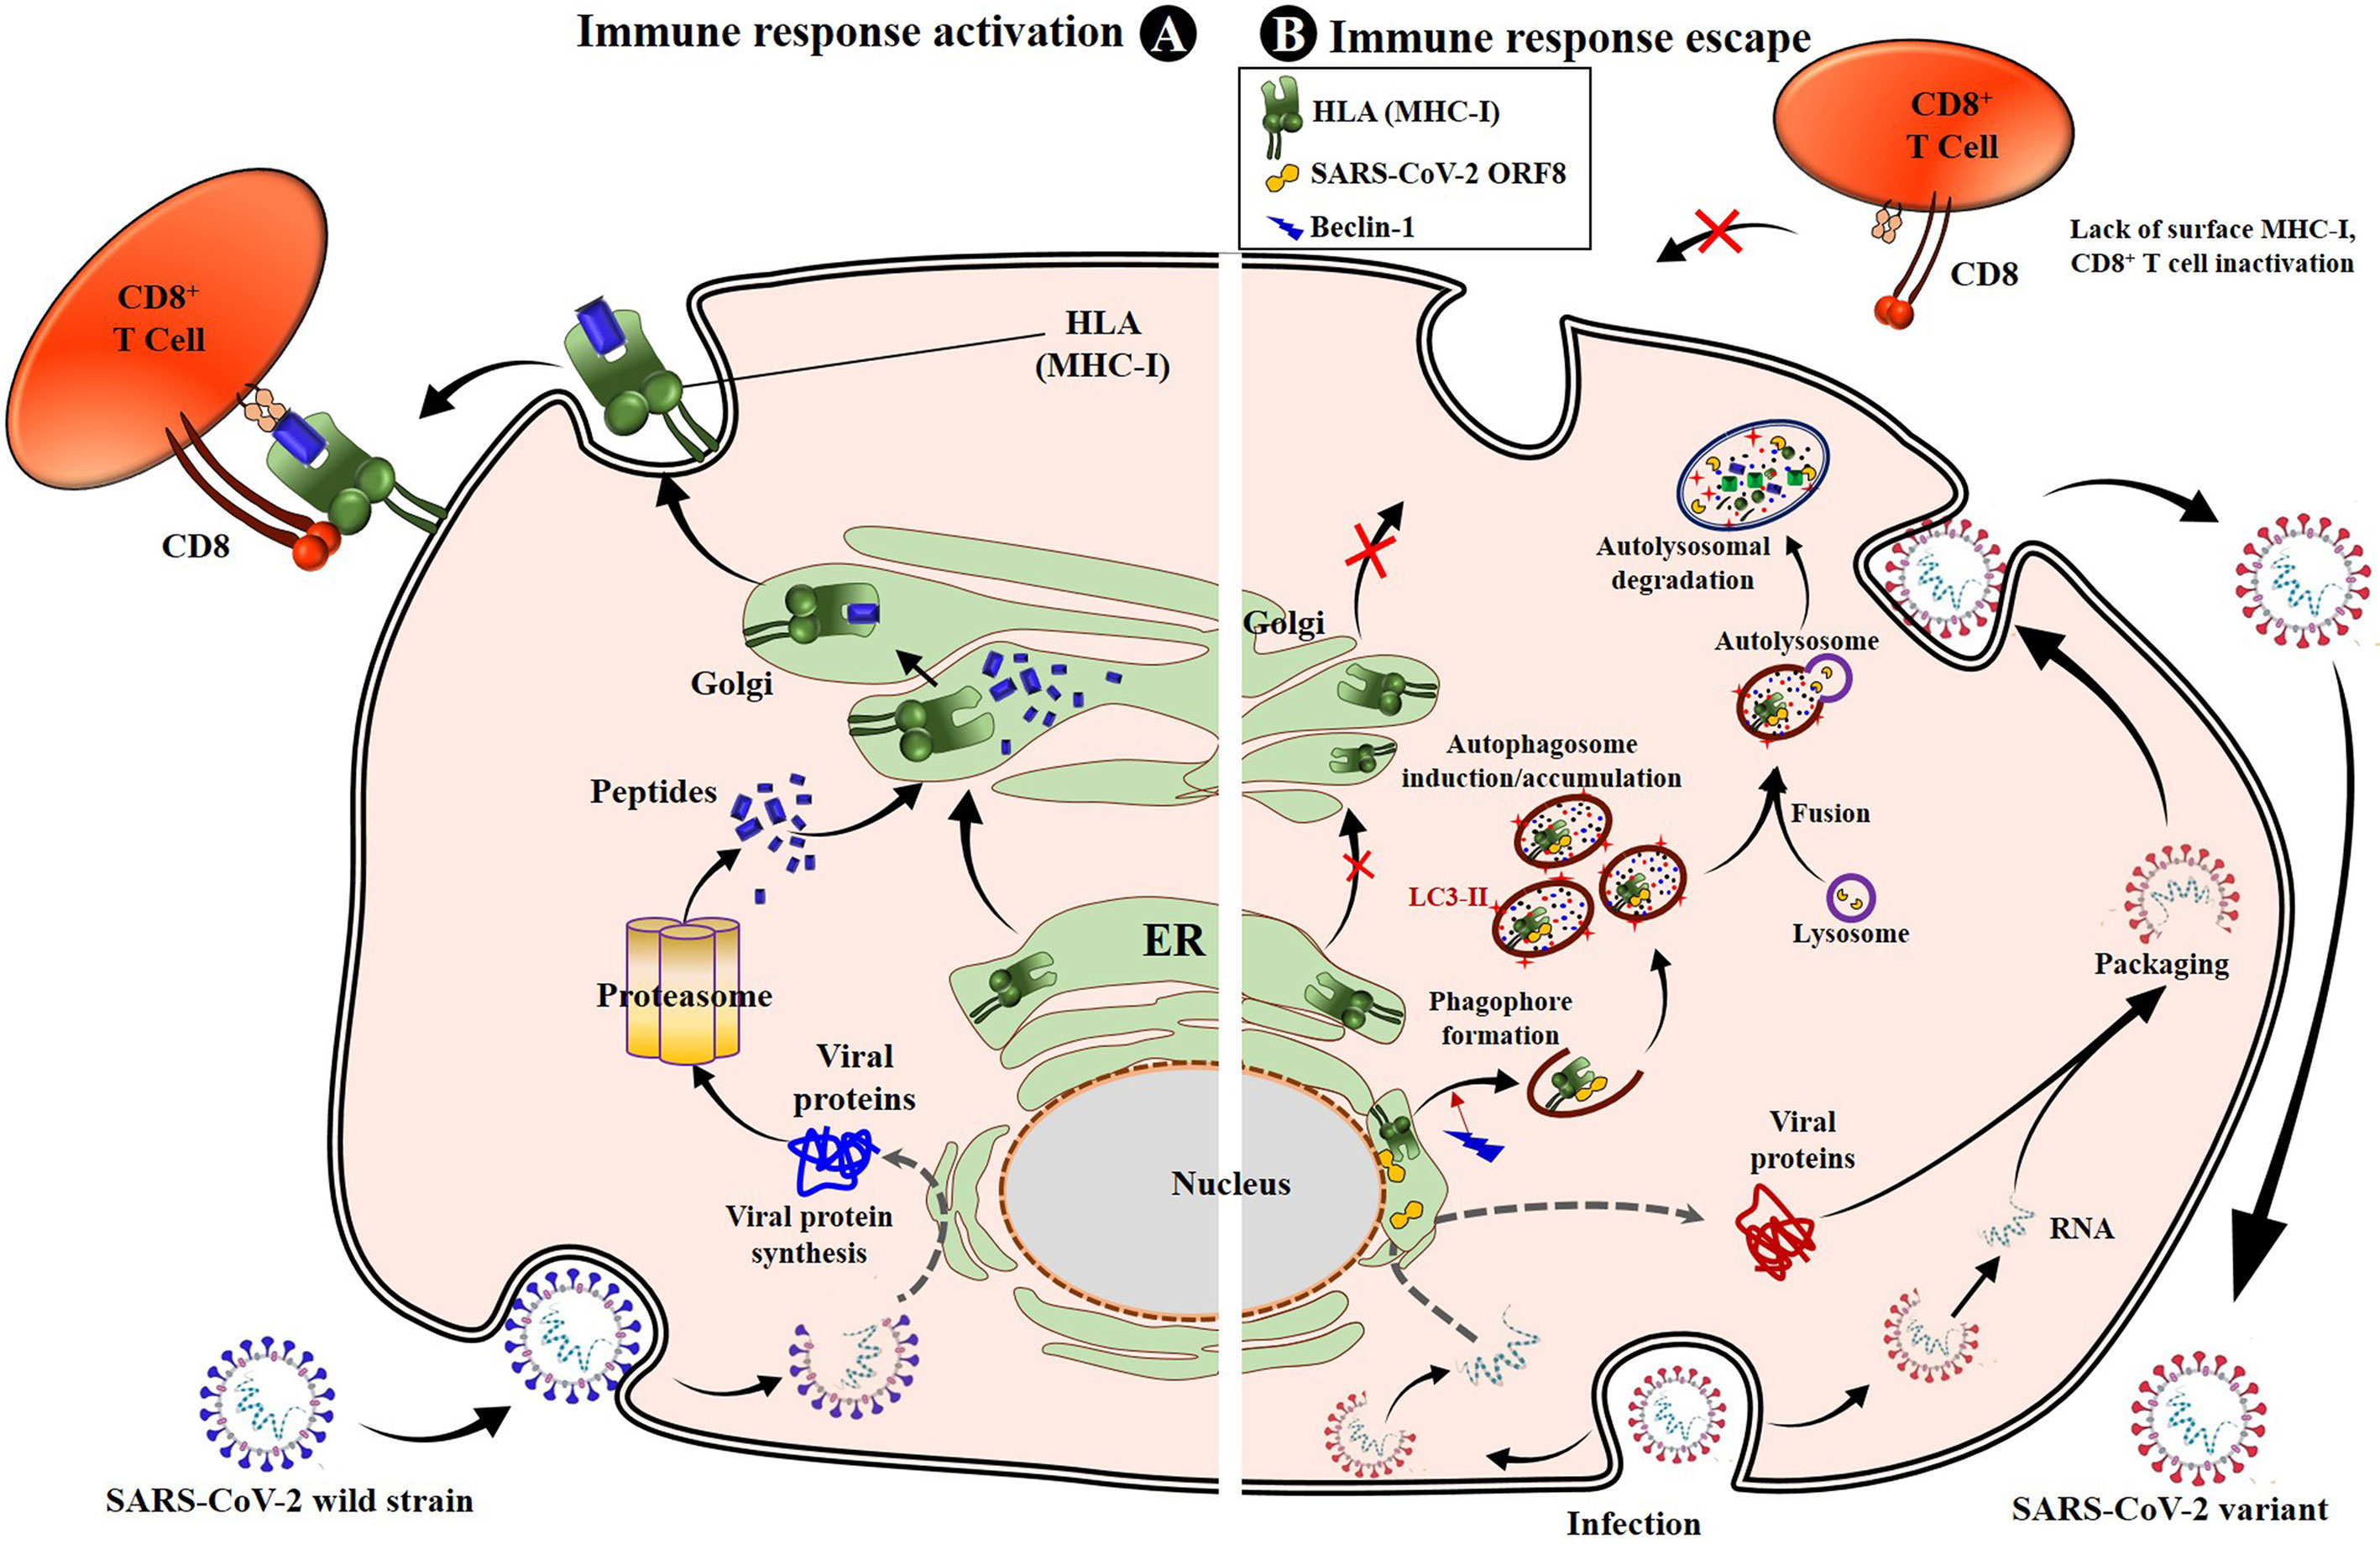 SARS-CoV-2 evades natural killer cell cytotoxic responses